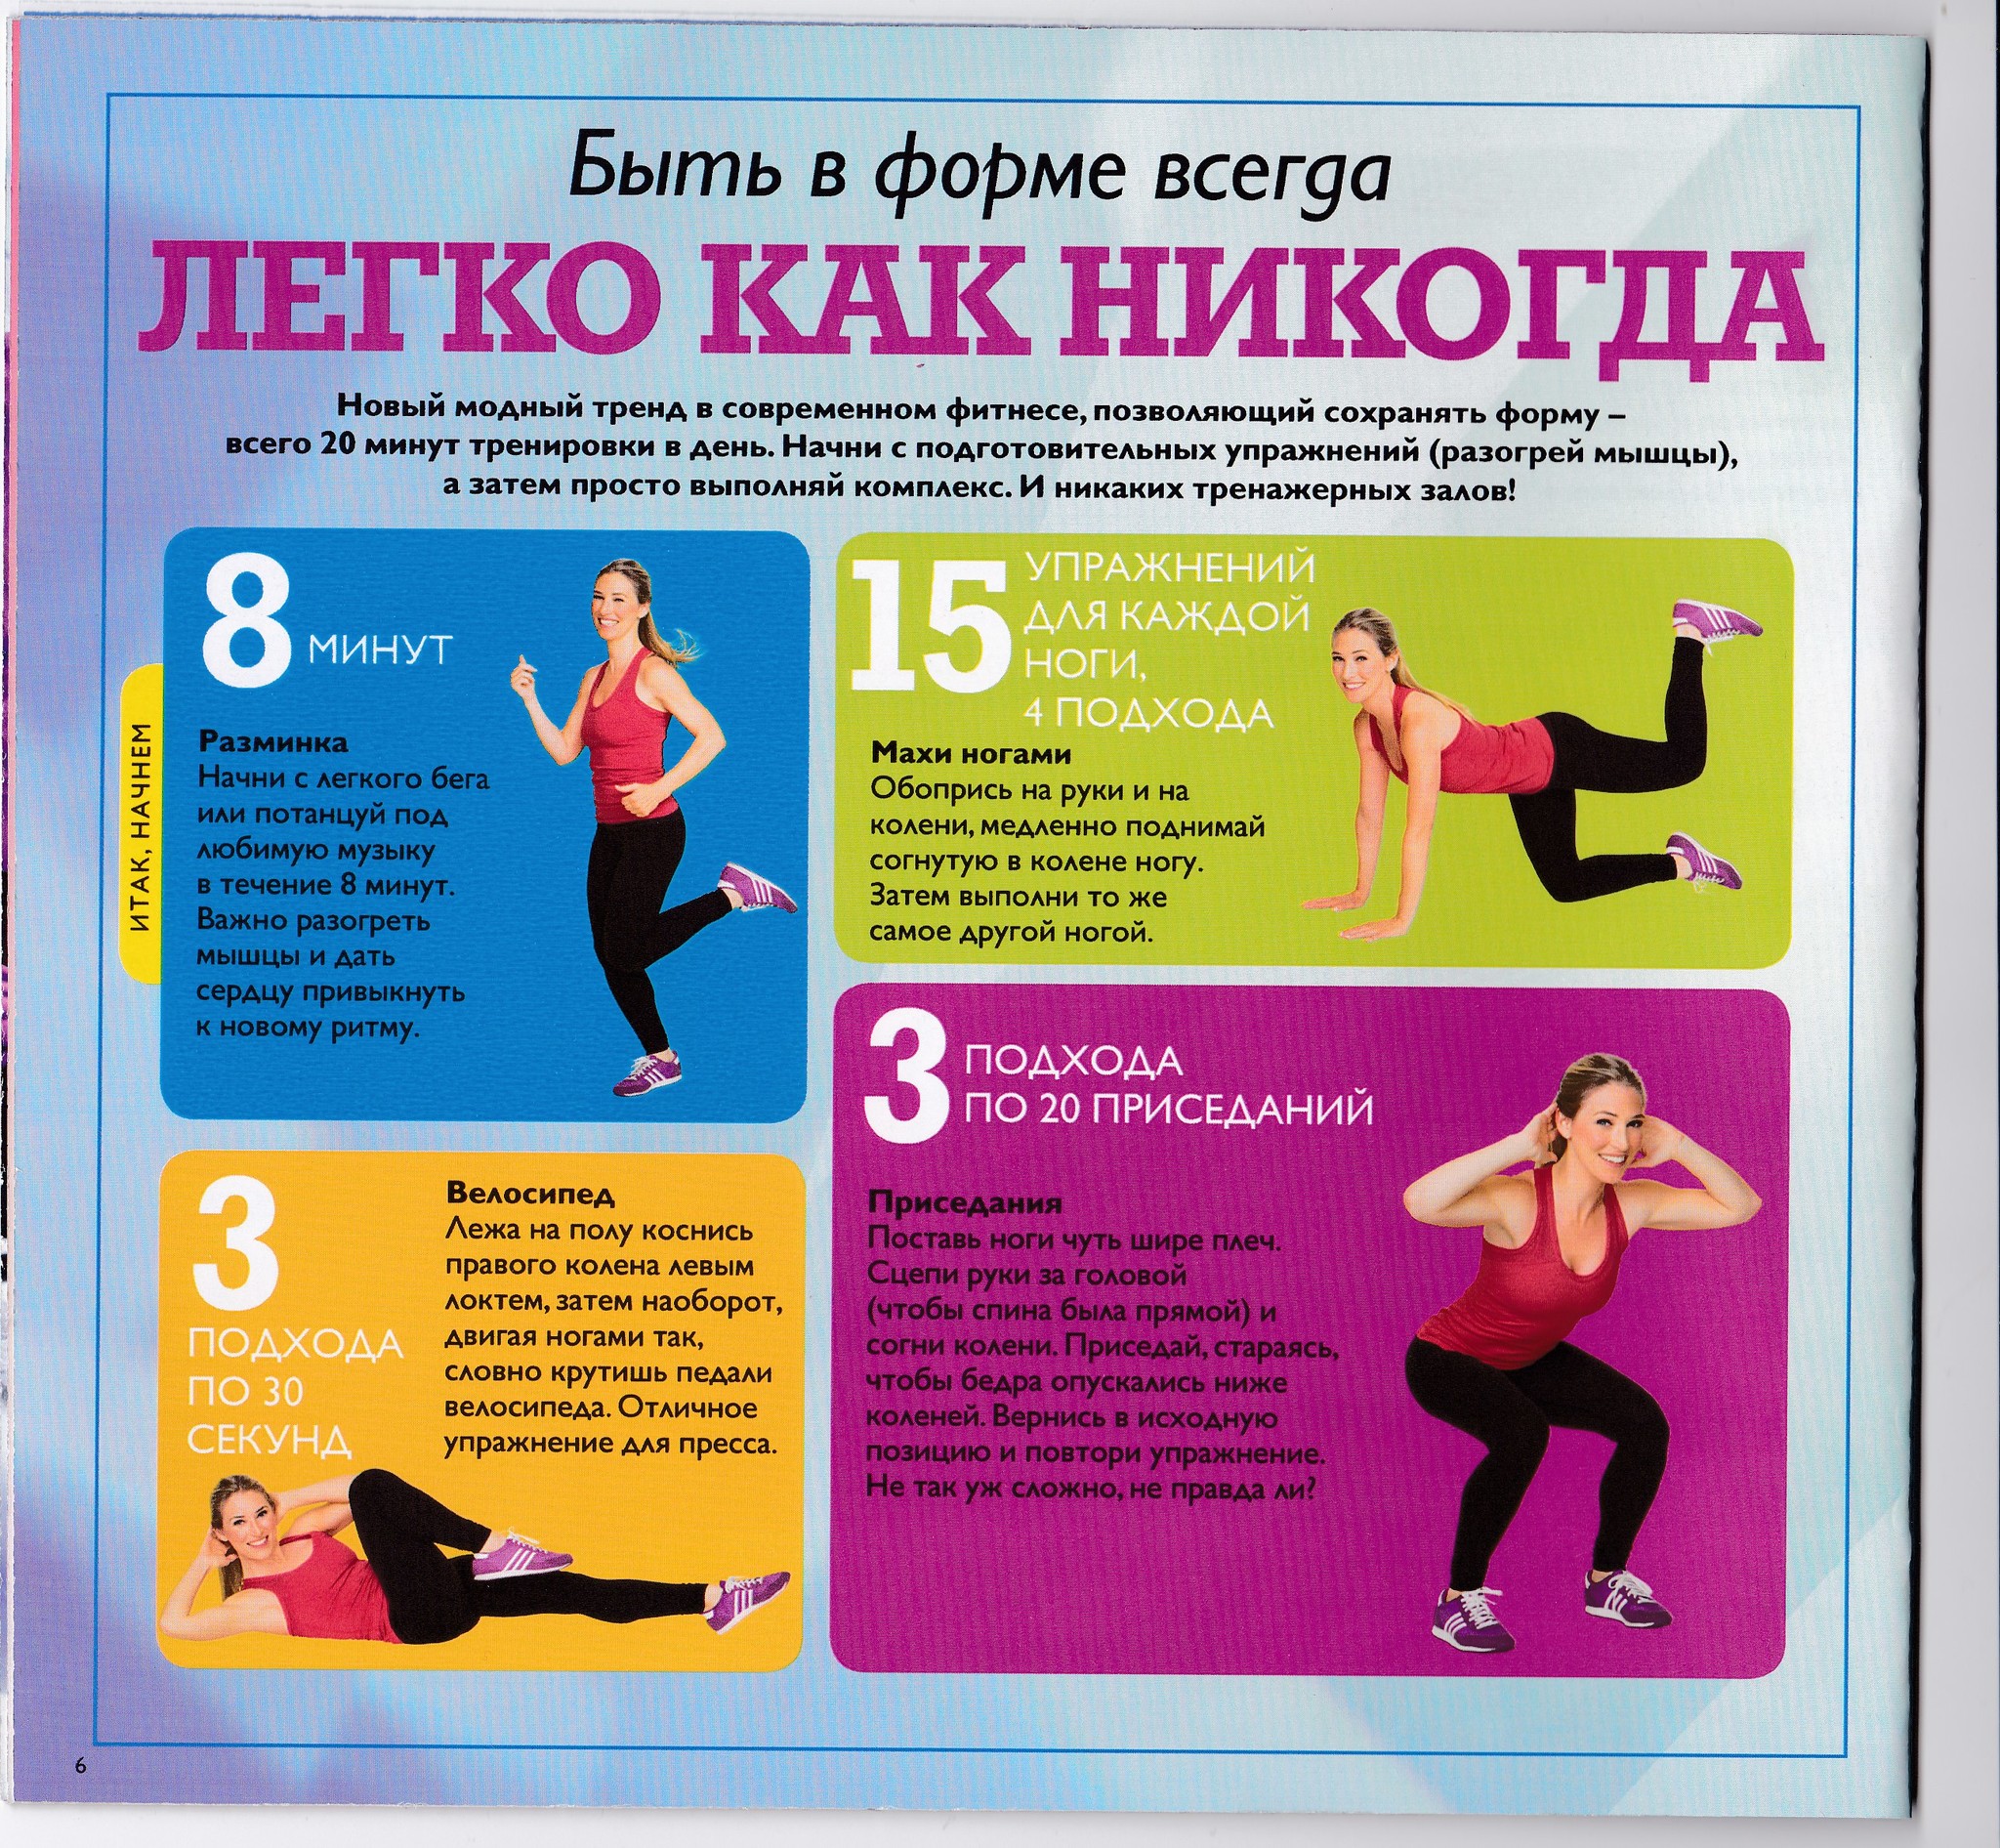 Тренировка танцевальная для похудения в домашних условиях. Комплекс упражнений для похудения. Упражнения для похуден. Комплекс упражнений для зарядки для похудения. Упражнеиядля похудения.